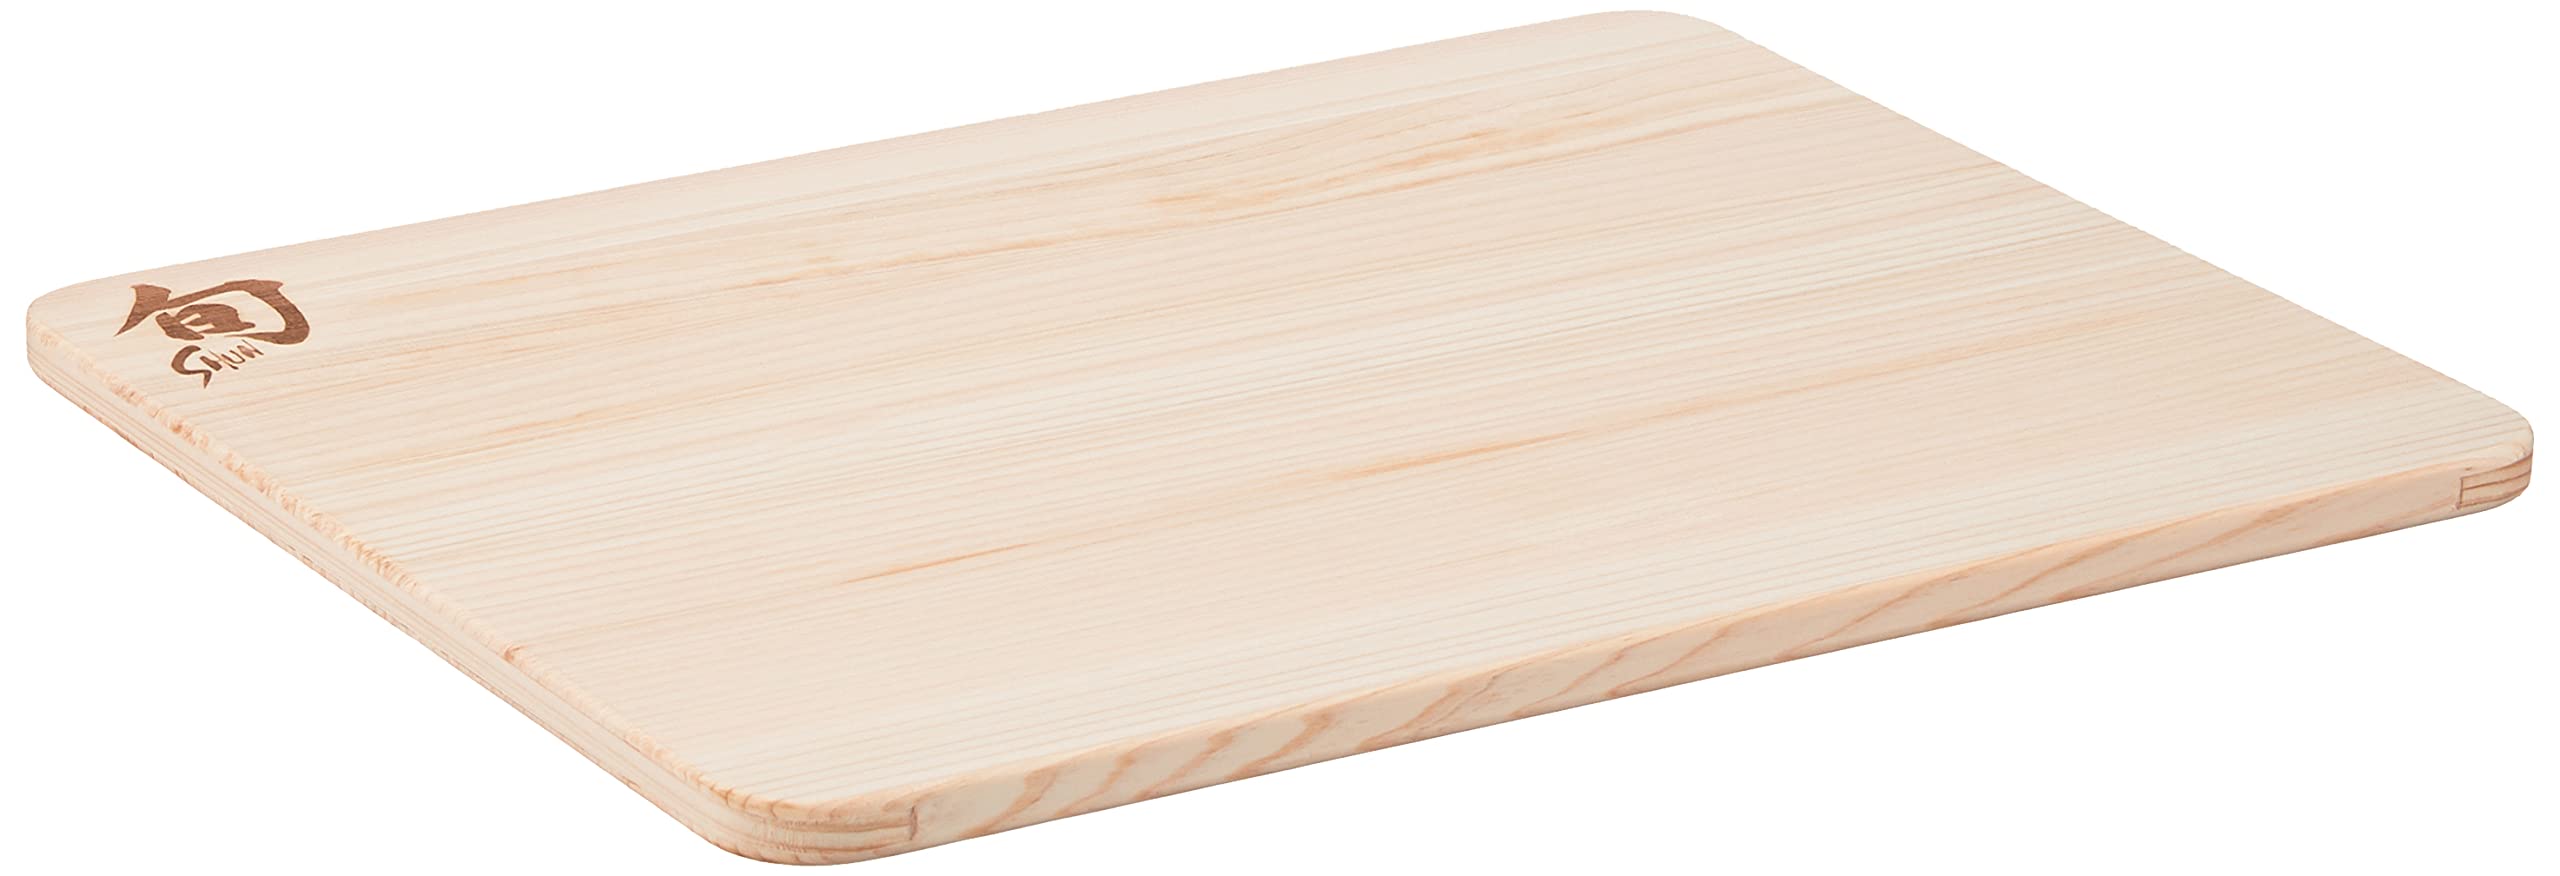 KAI Shun Schneidbrett Hinoki, Größe S - Japanische Zypresse - Abmessung 27,5 x 21,5 x 1 cm Schneidunterlage Holzbrett zum Schneiden